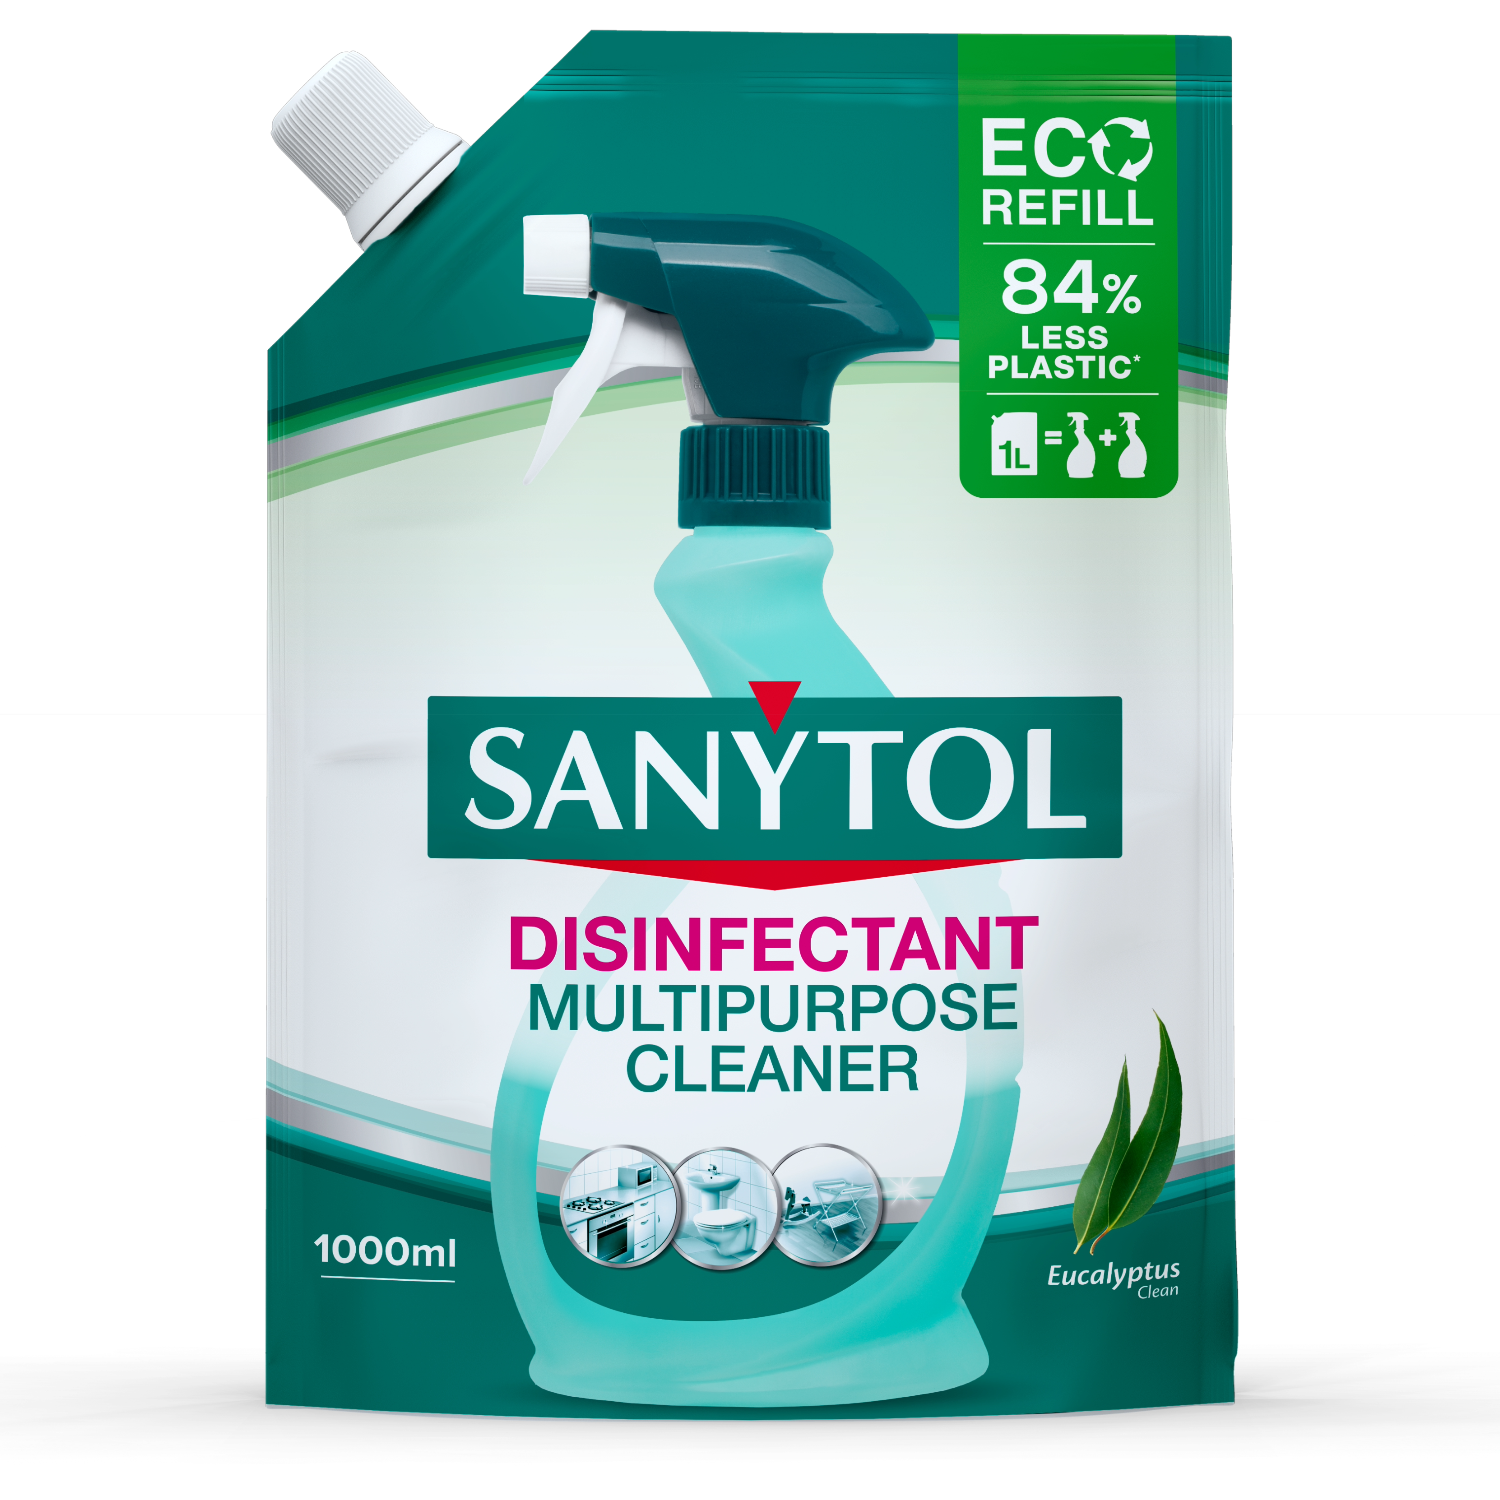 MultiLimpio - Limpiador Desinfectante Multiuso Sanytol X3 Unid